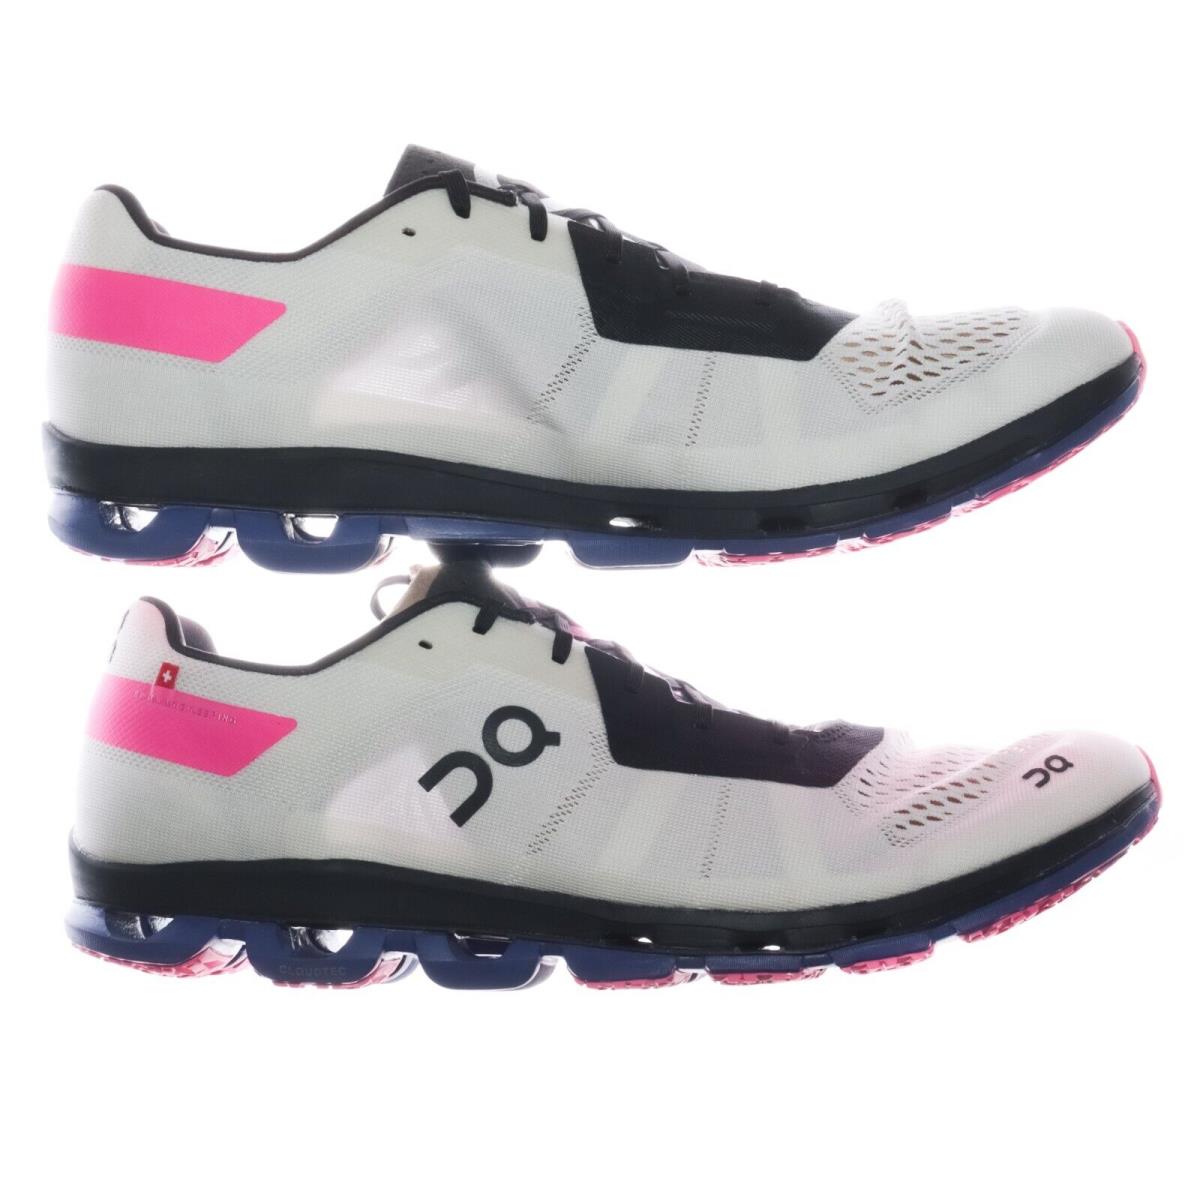 On-Running shoes Cloudflash - White, Indigo, Pink 6